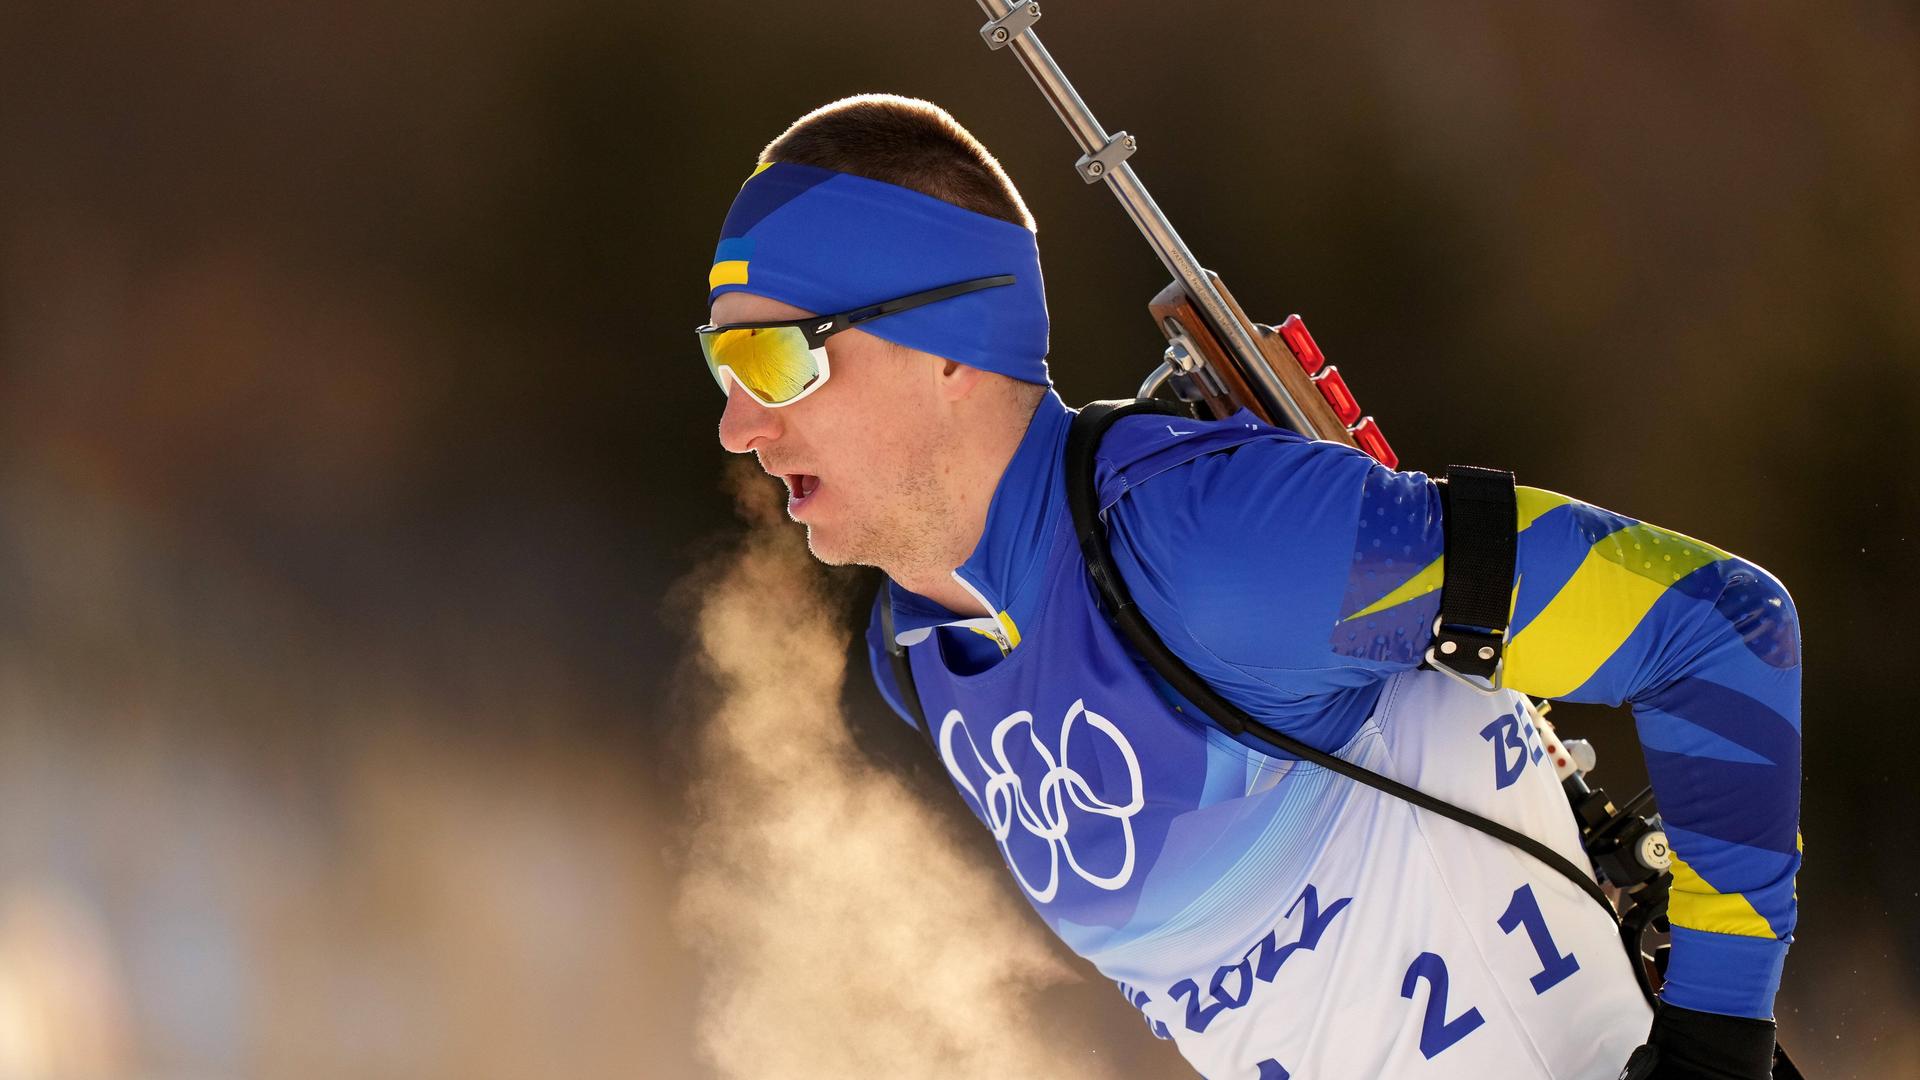 Der Biathlet Dmytro Pidrutschnji trat im Februar noch bei den Olympischen Winterspielen in Peking an. Inzwischen verteidigt er seine Heimat.